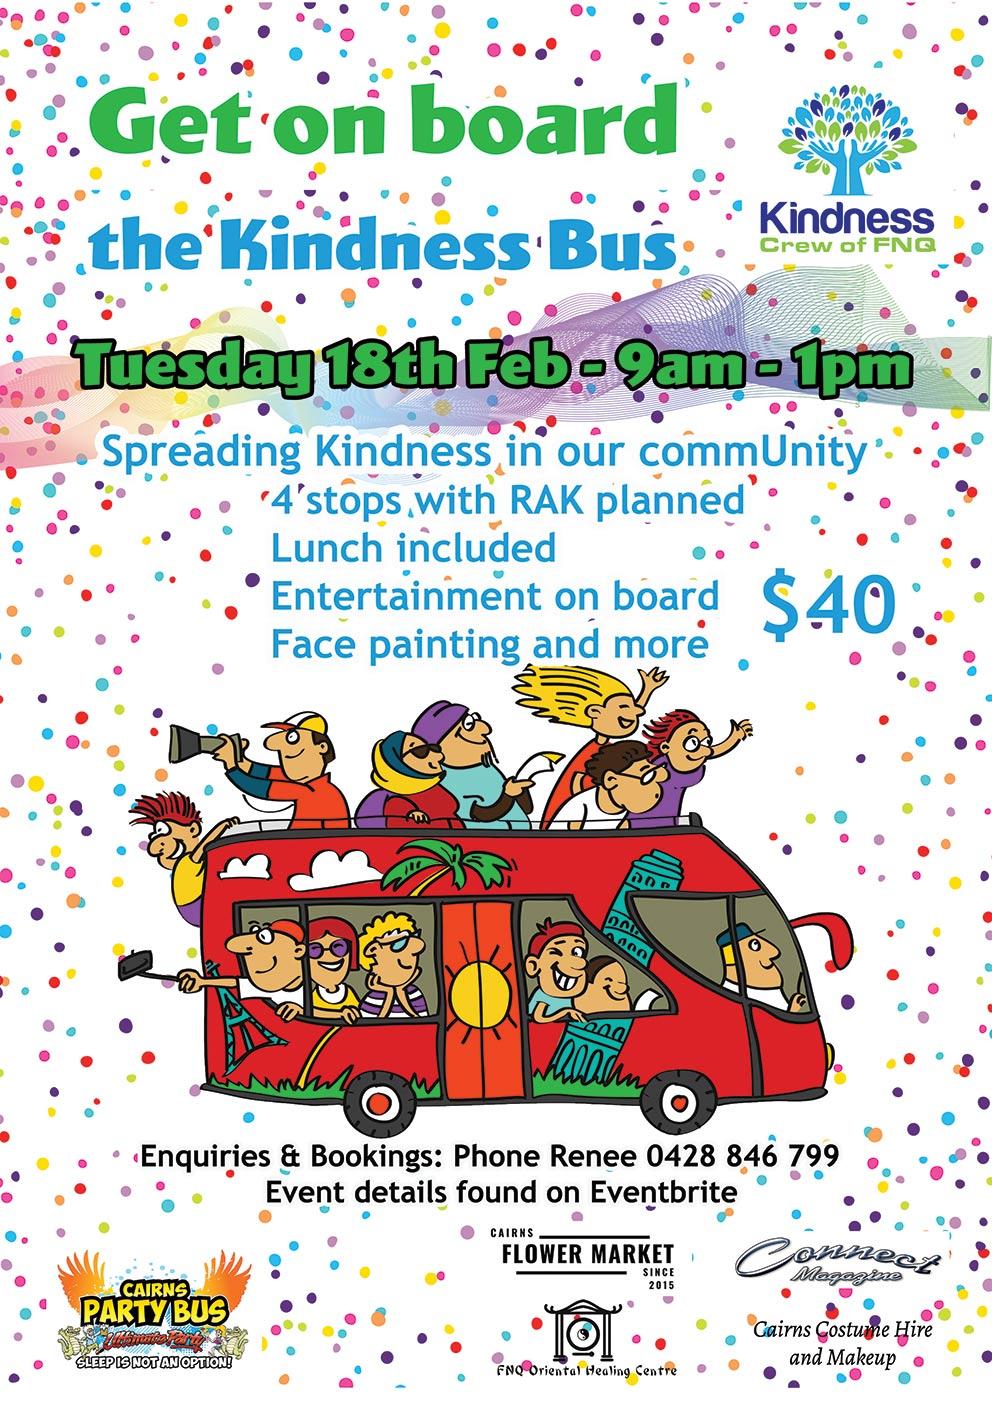 Kindness Bus Tour 2020 - 18 FEB 2020